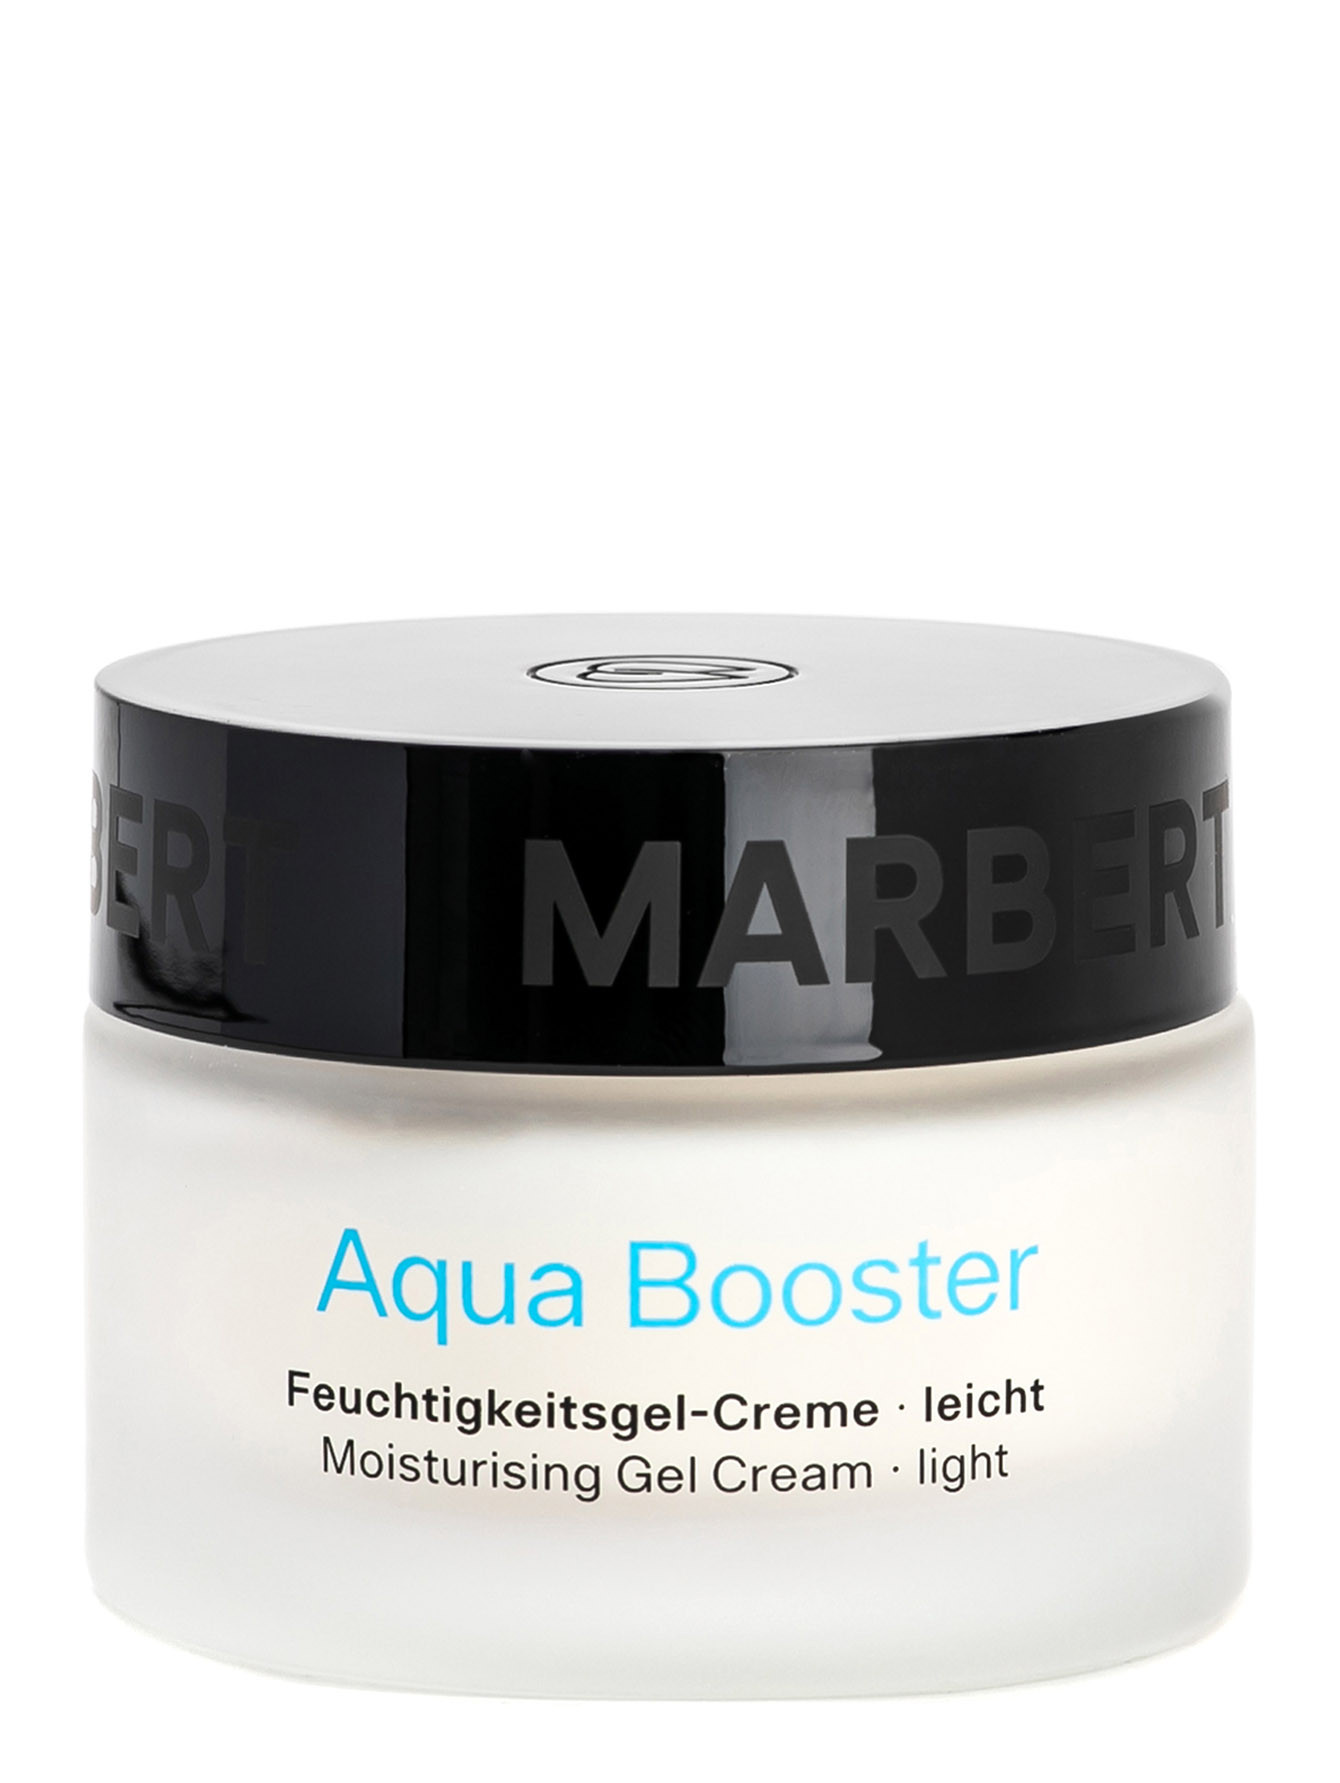 Увлажняющий гель-крем для кожи лица Aqua Booster Moisturising Gel Creame, 50 мл - Общий вид